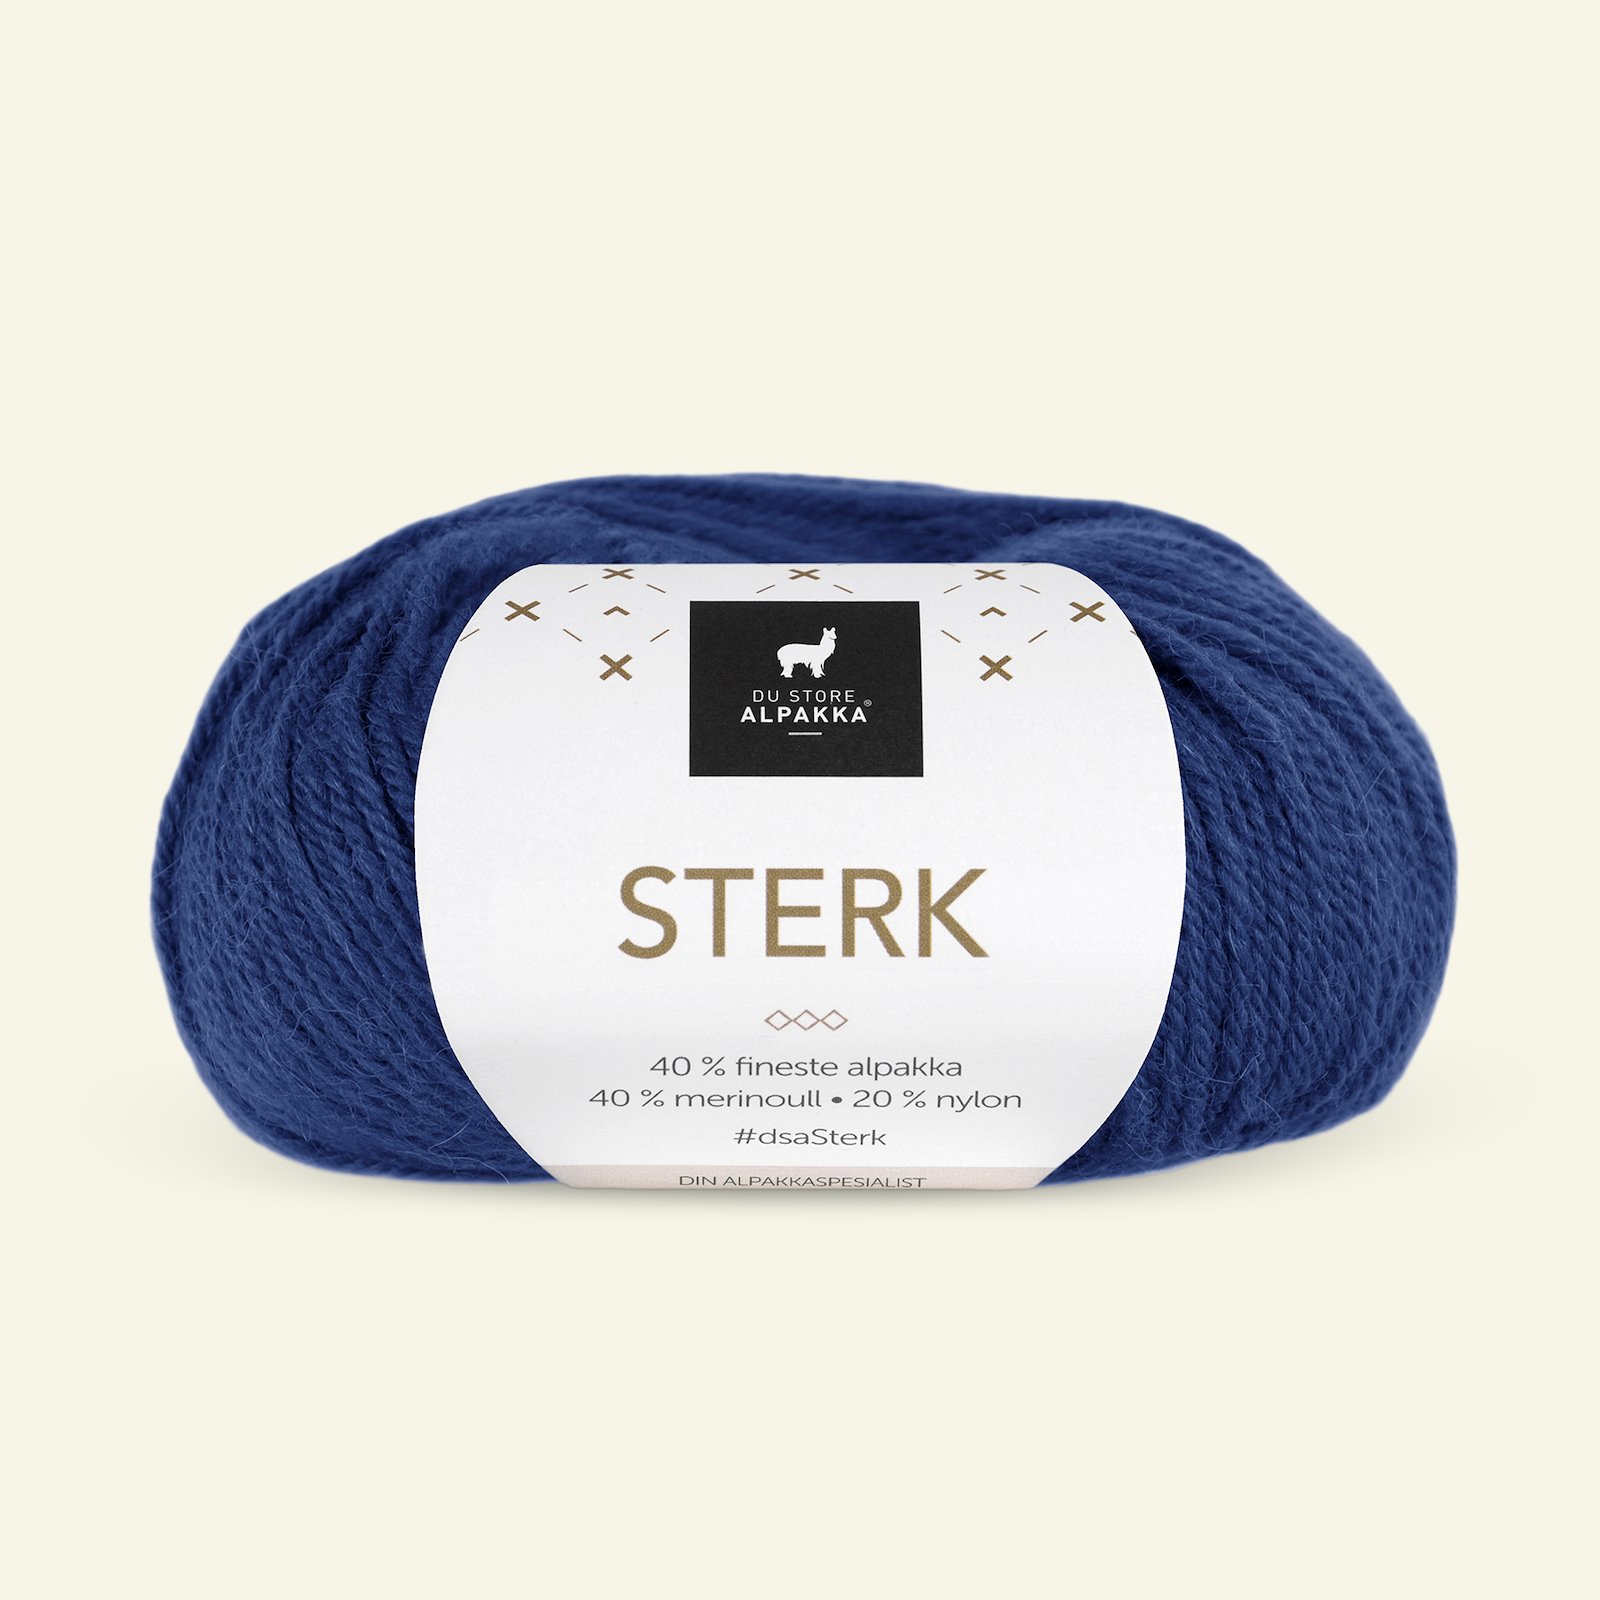 Du Store Alpakka, alpaca merino blandingsgarn, "Sterk", blå (815) 90000661_pack